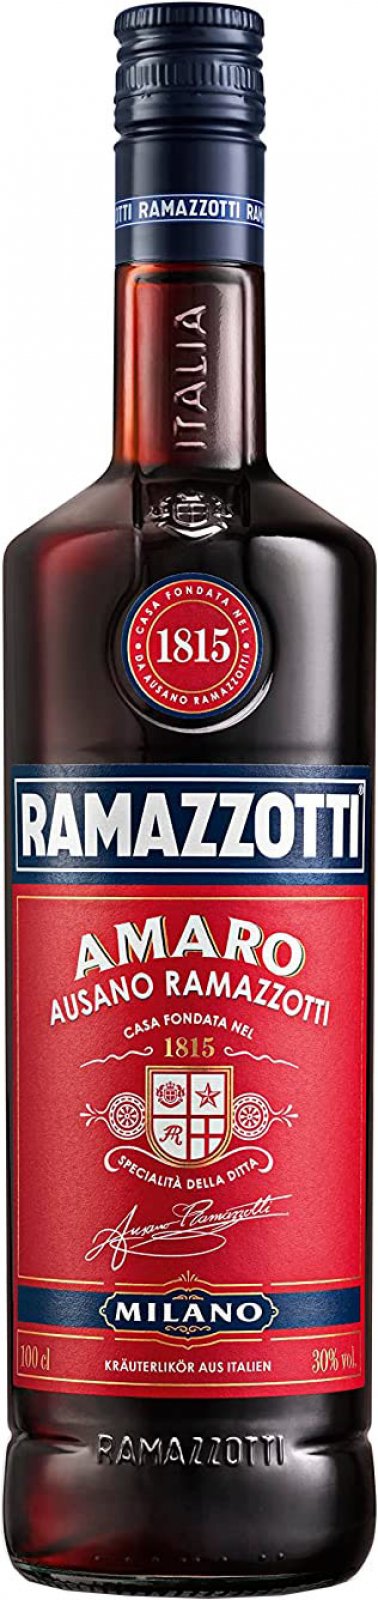 Ramazzotti Amaro 30% Liter Shop 1 im Vol